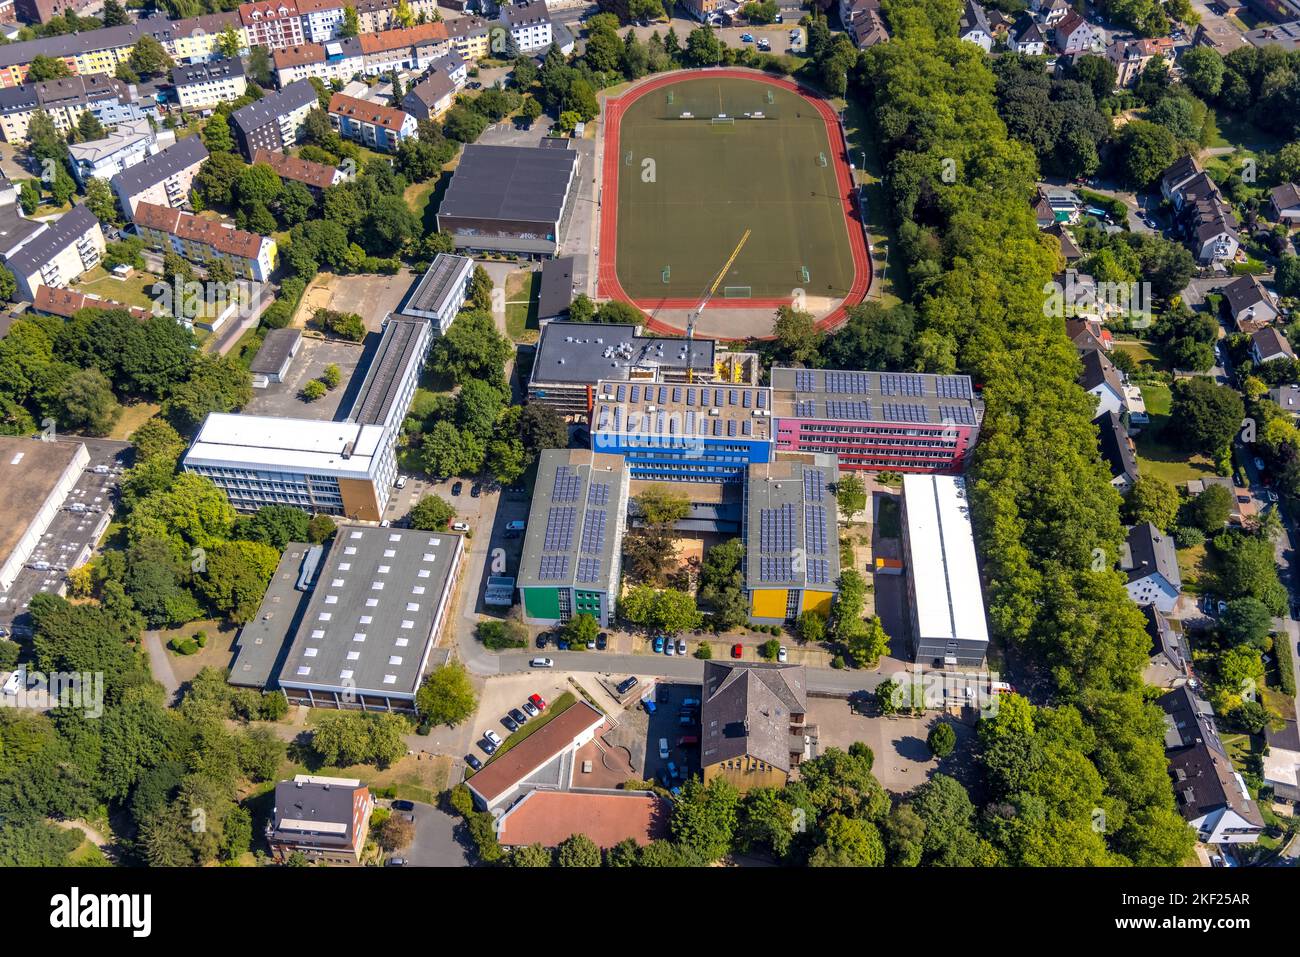 Luftbild, Berufskolleg Witten und Sportplatz Husemannstraße, Otto-Schott-Gesamtschule (früher Realschule), Witten, Ruhrgebiet, Nordrhein-Westfalen, De Stock Photo